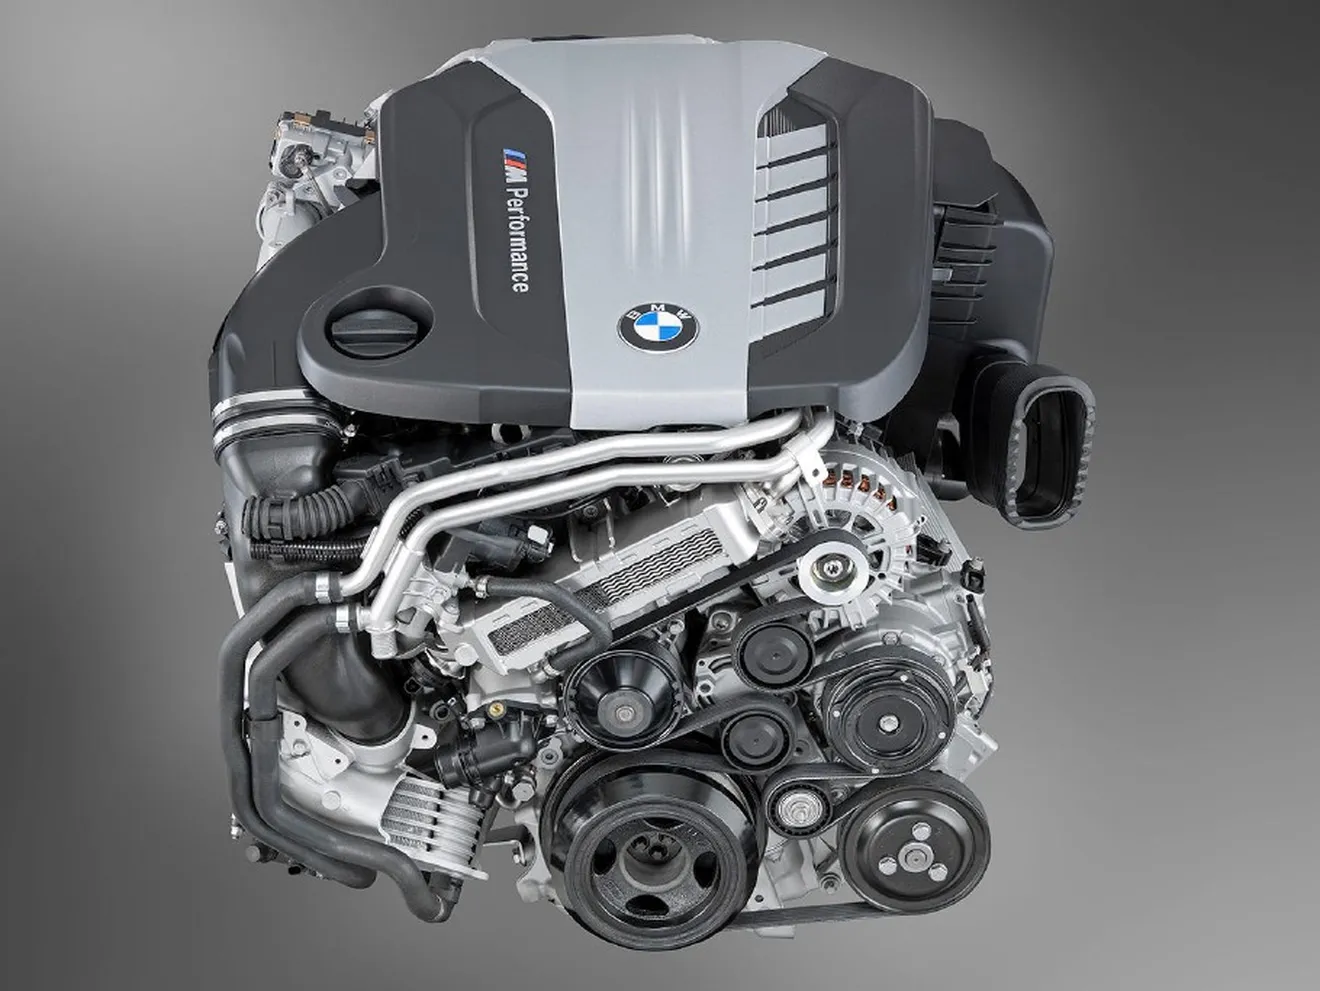 BMW explota el motor diésel quad-turbo, casi 800 Nm de par motor